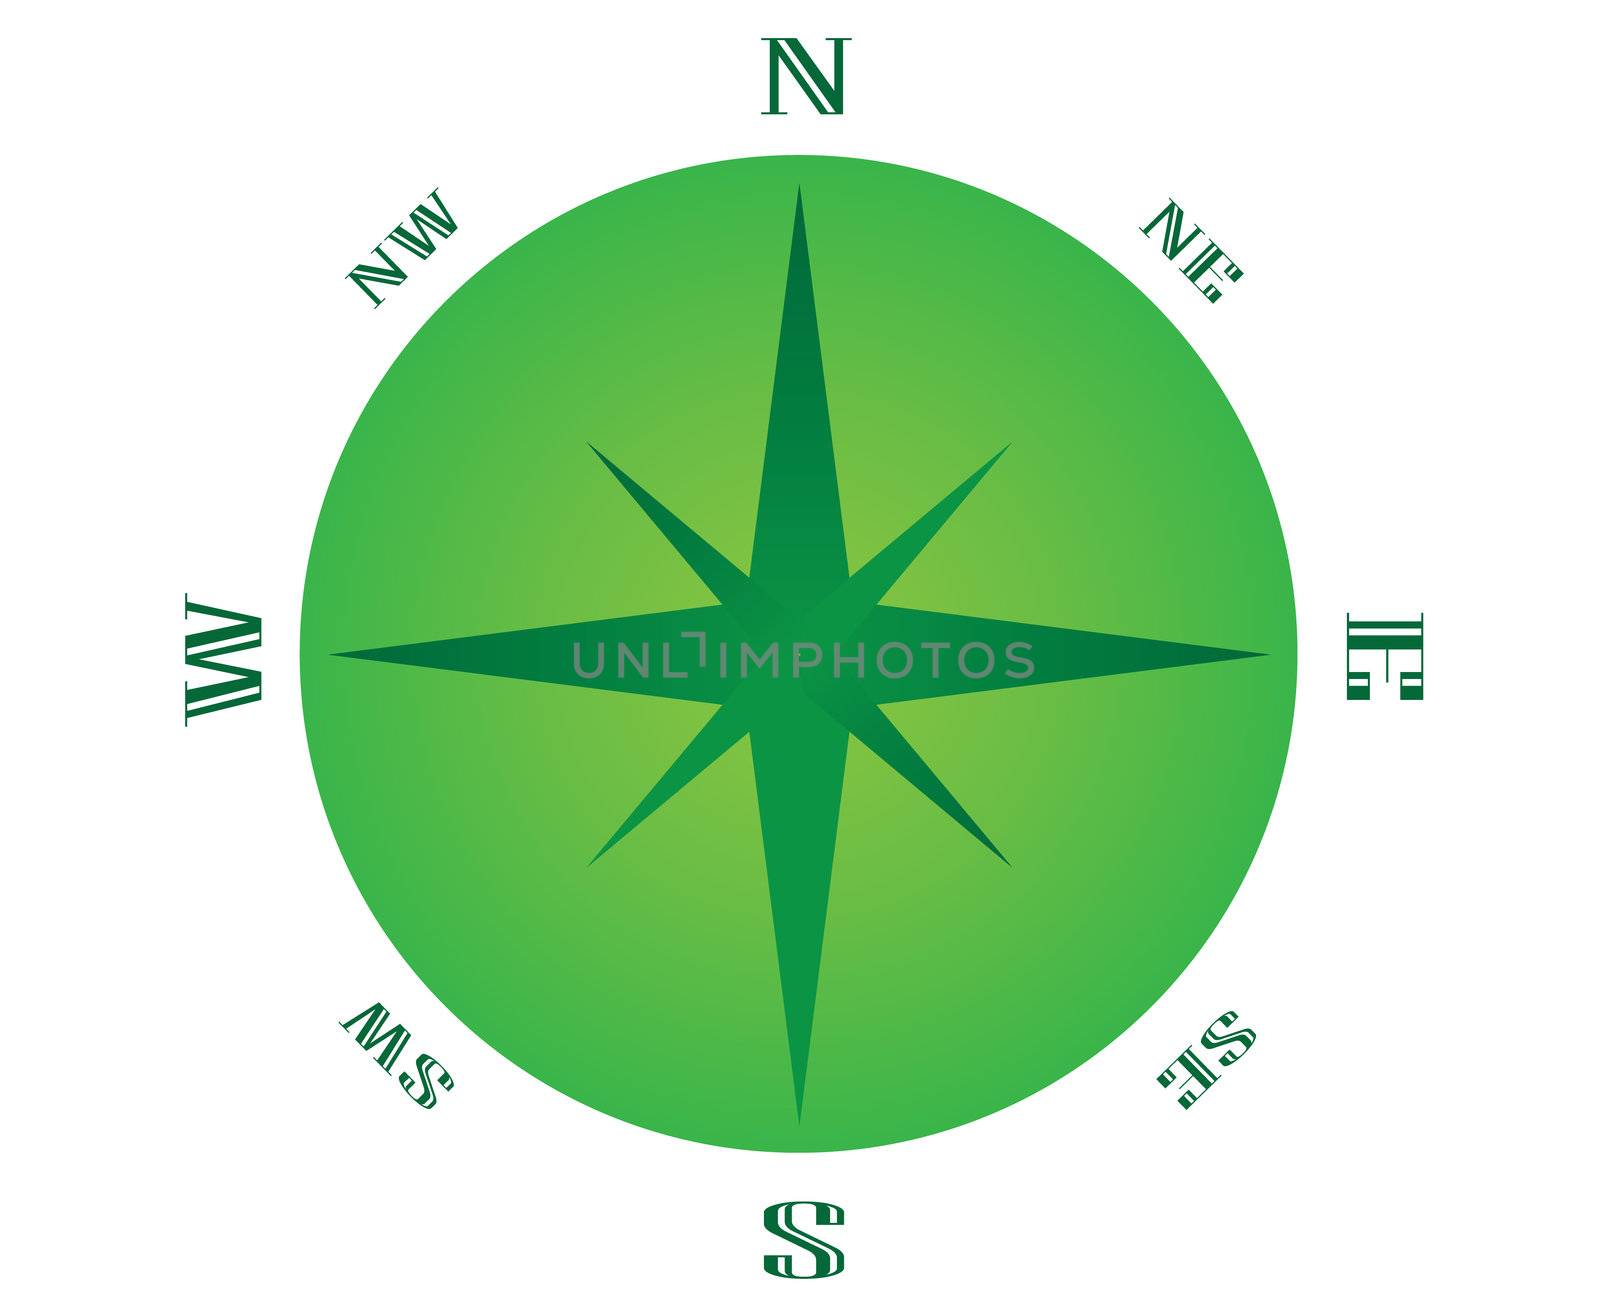 green compas